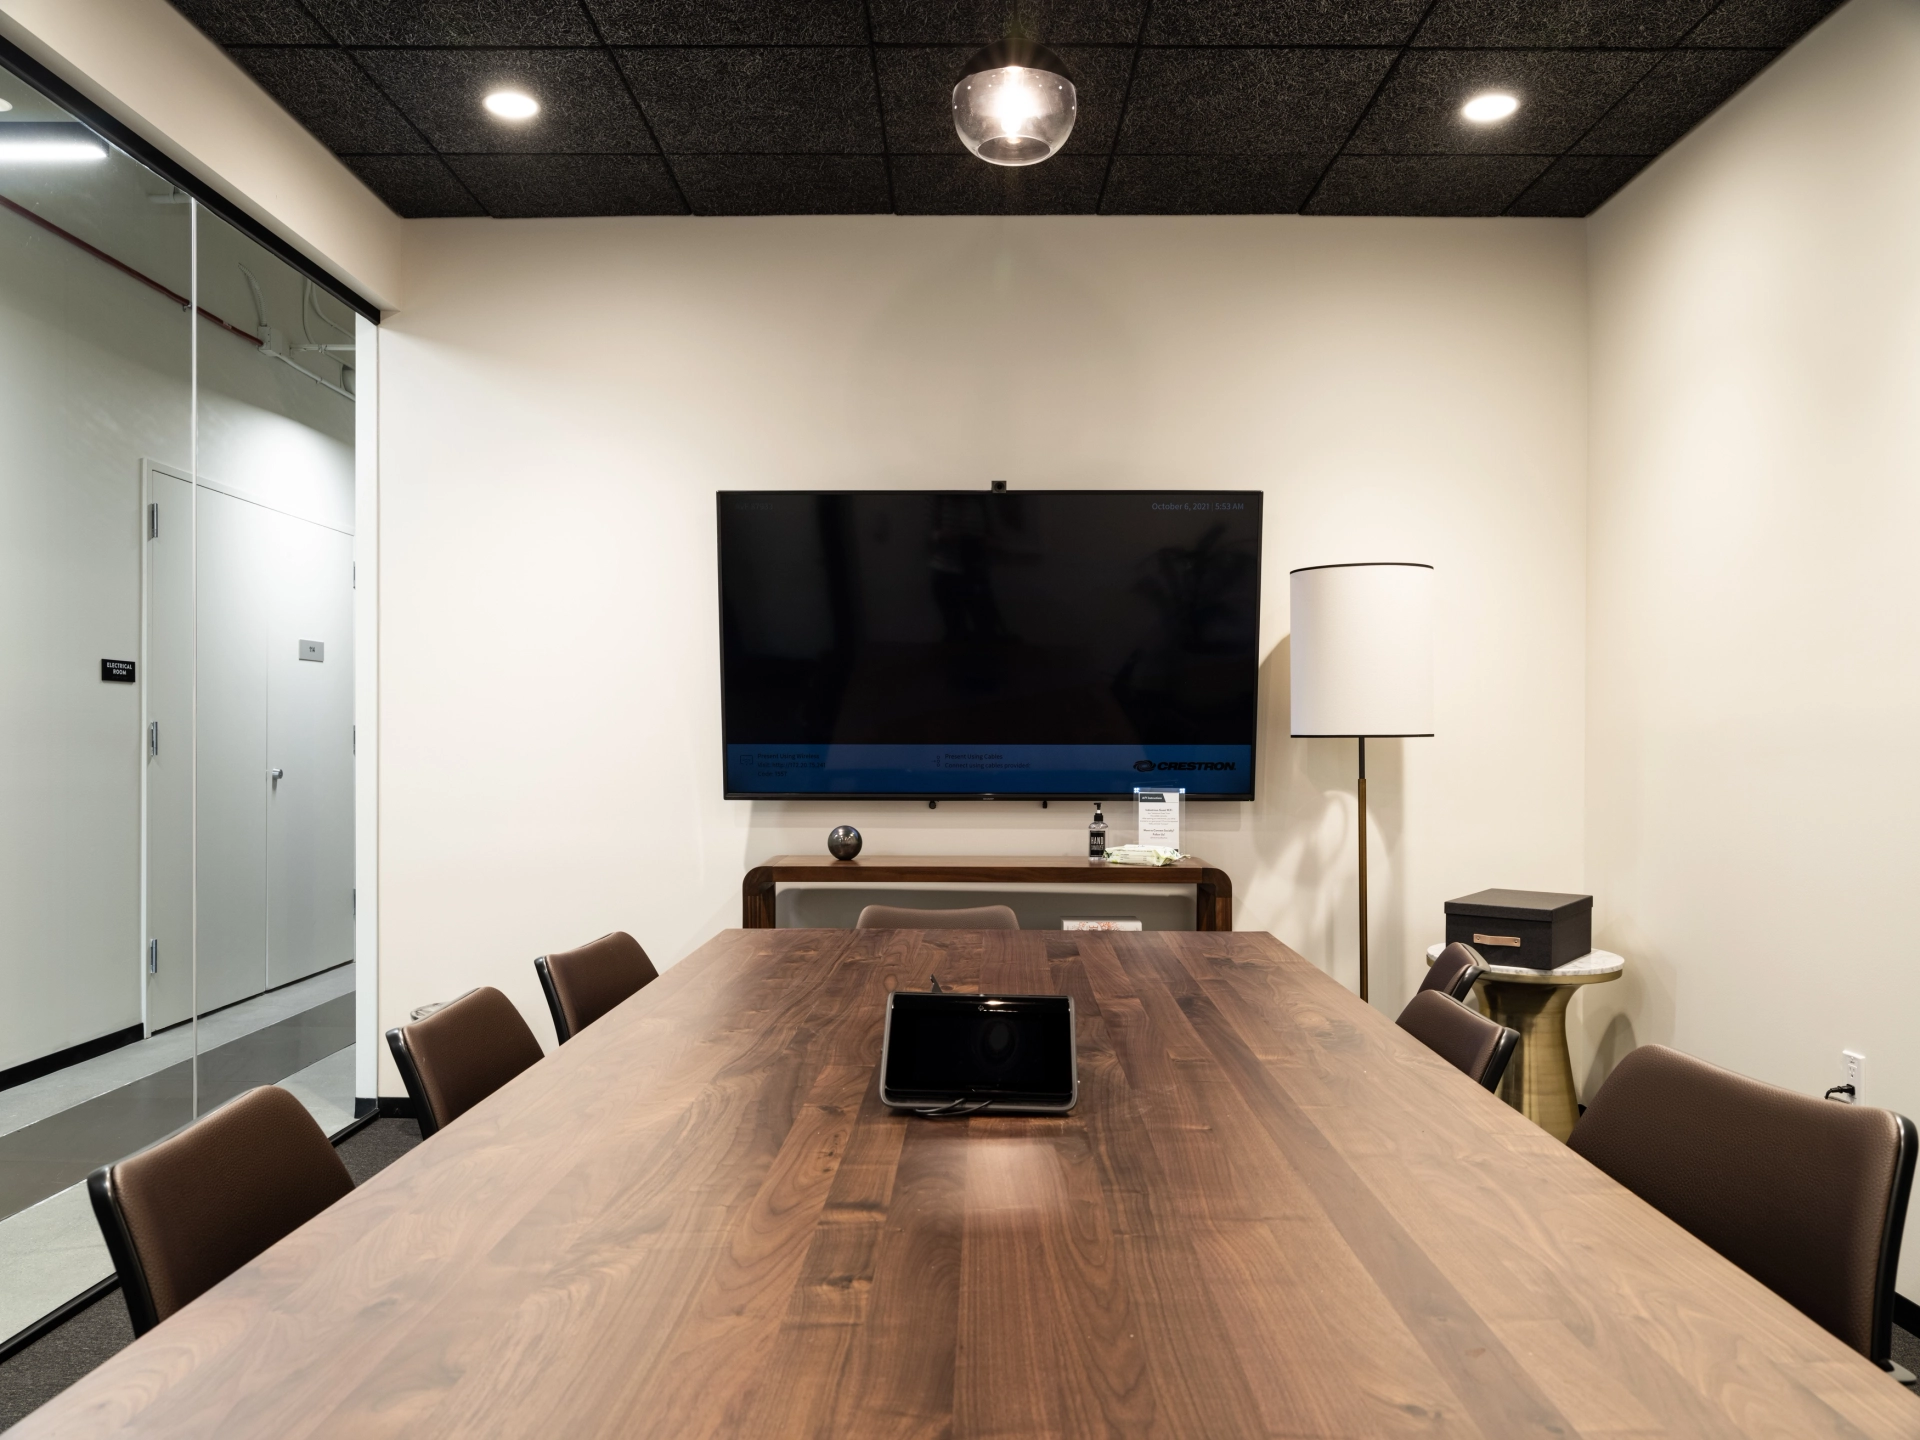 Une salle de réunion de coworking équipée d'une table en bois et d'une télévision.